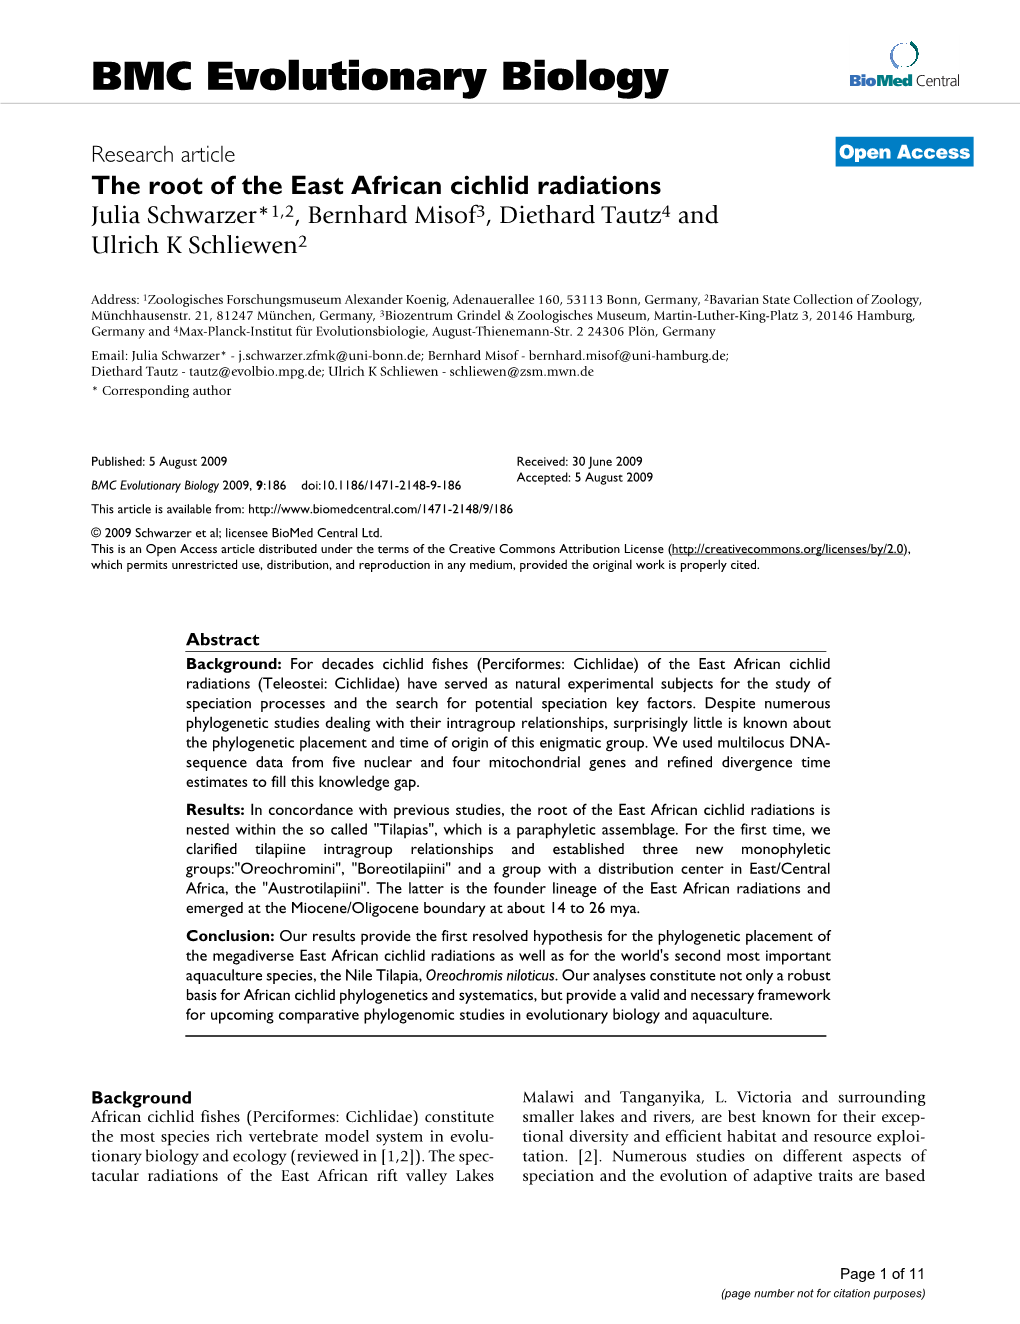 The Root of the East African Cichlid Radiations Julia Schwarzer*1,2, Bernhard Misof3, Diethard Tautz4 and Ulrich K Schliewen2